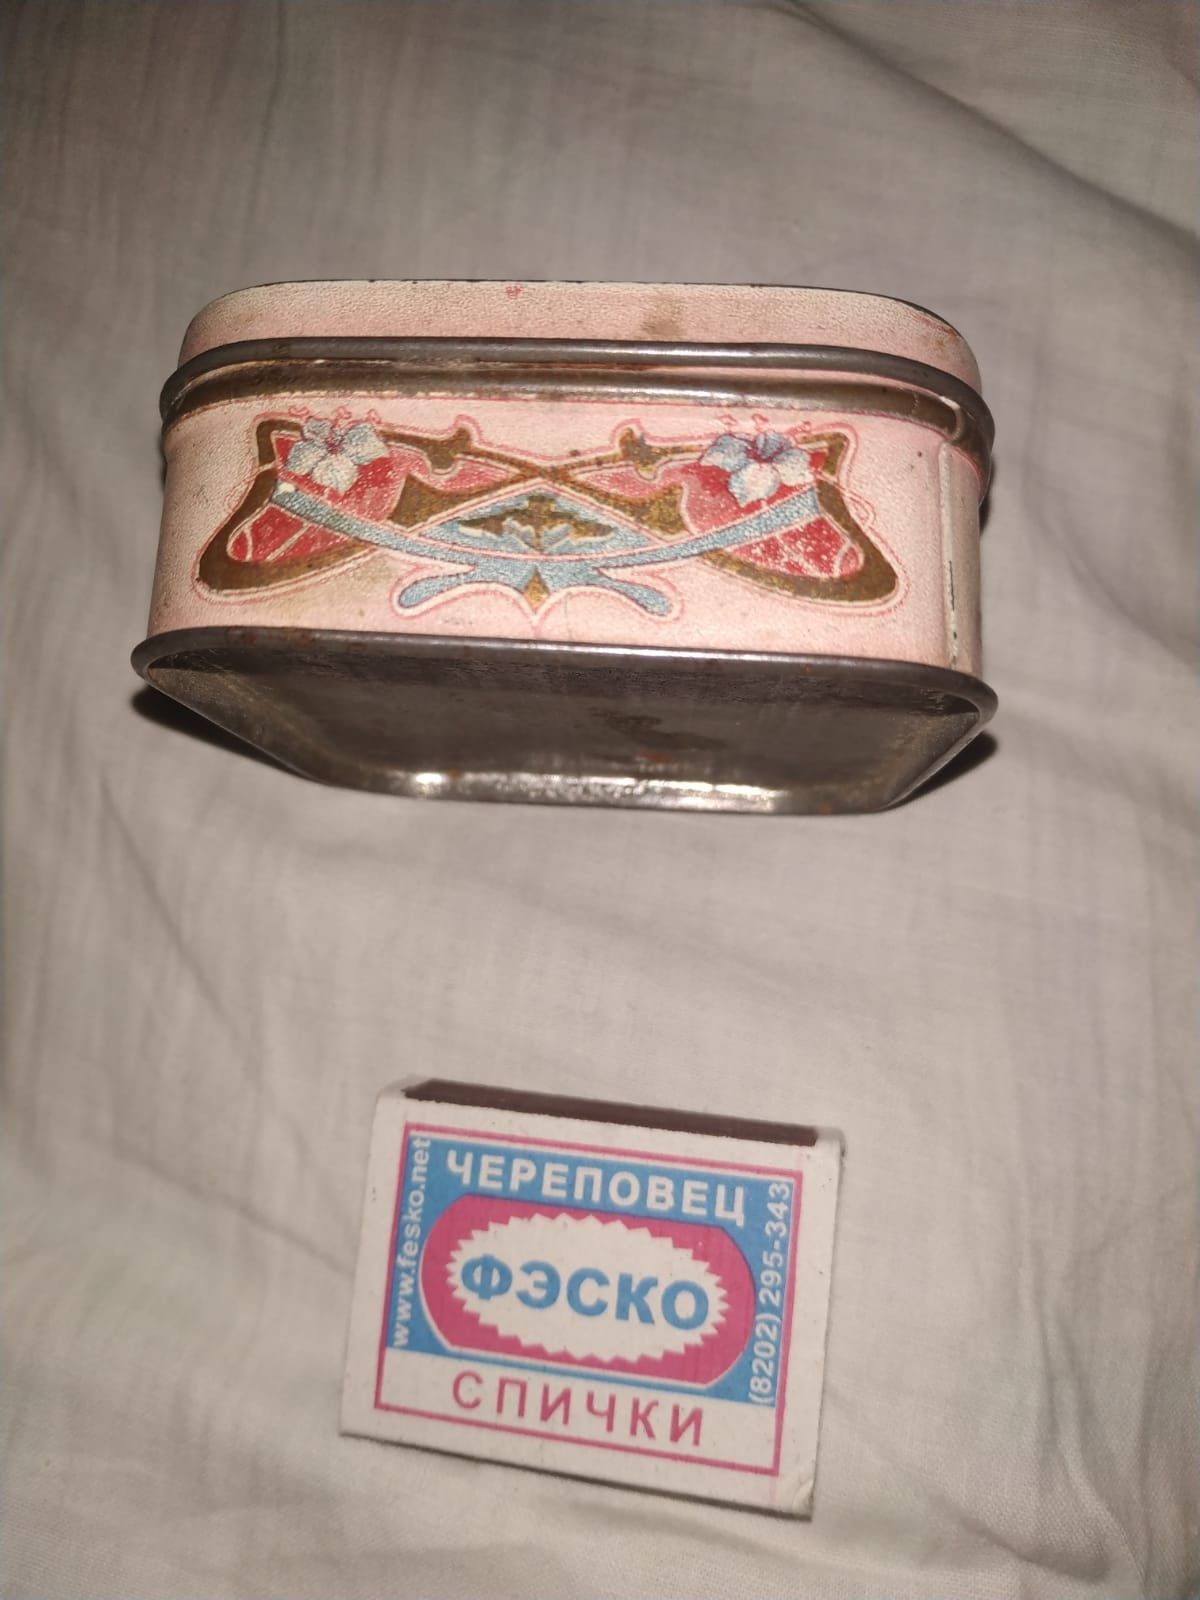 Коробка зубной порошок. 19 век.